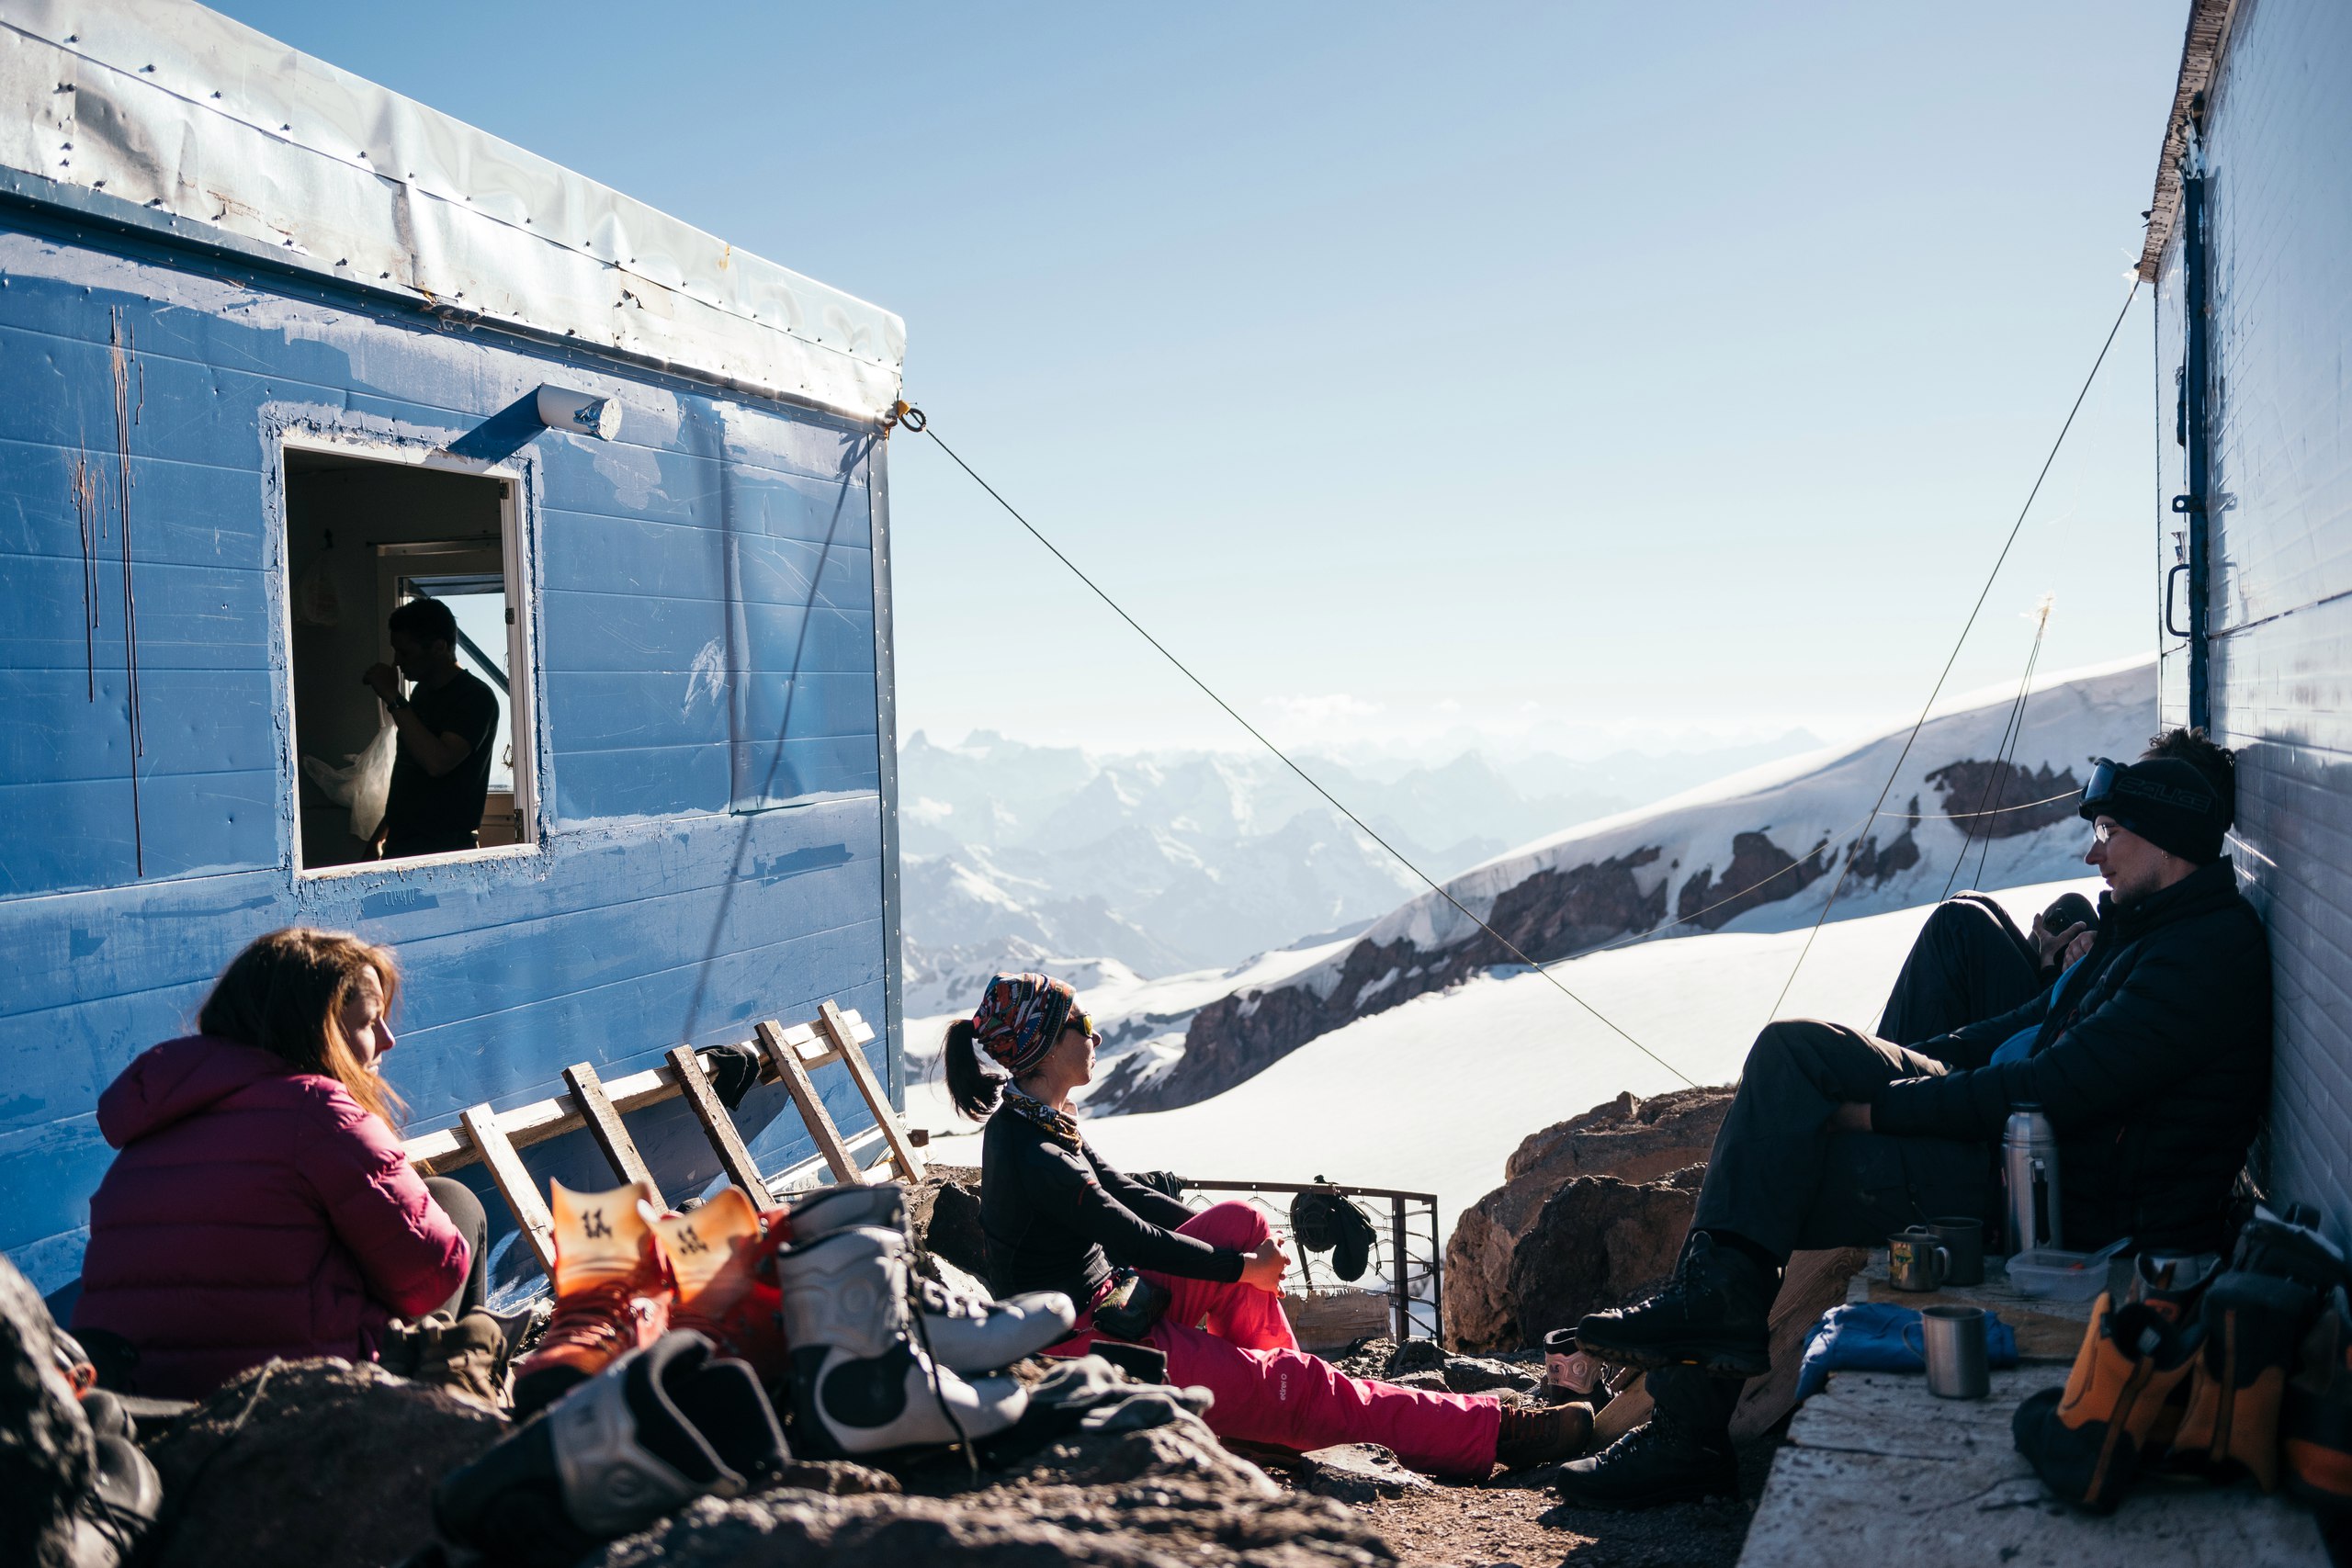 эльбрус высочайшая вершина россии европы самая высокая проживание восхождение поход горнолыжный маршрут добраться климат треккинг проживание приют